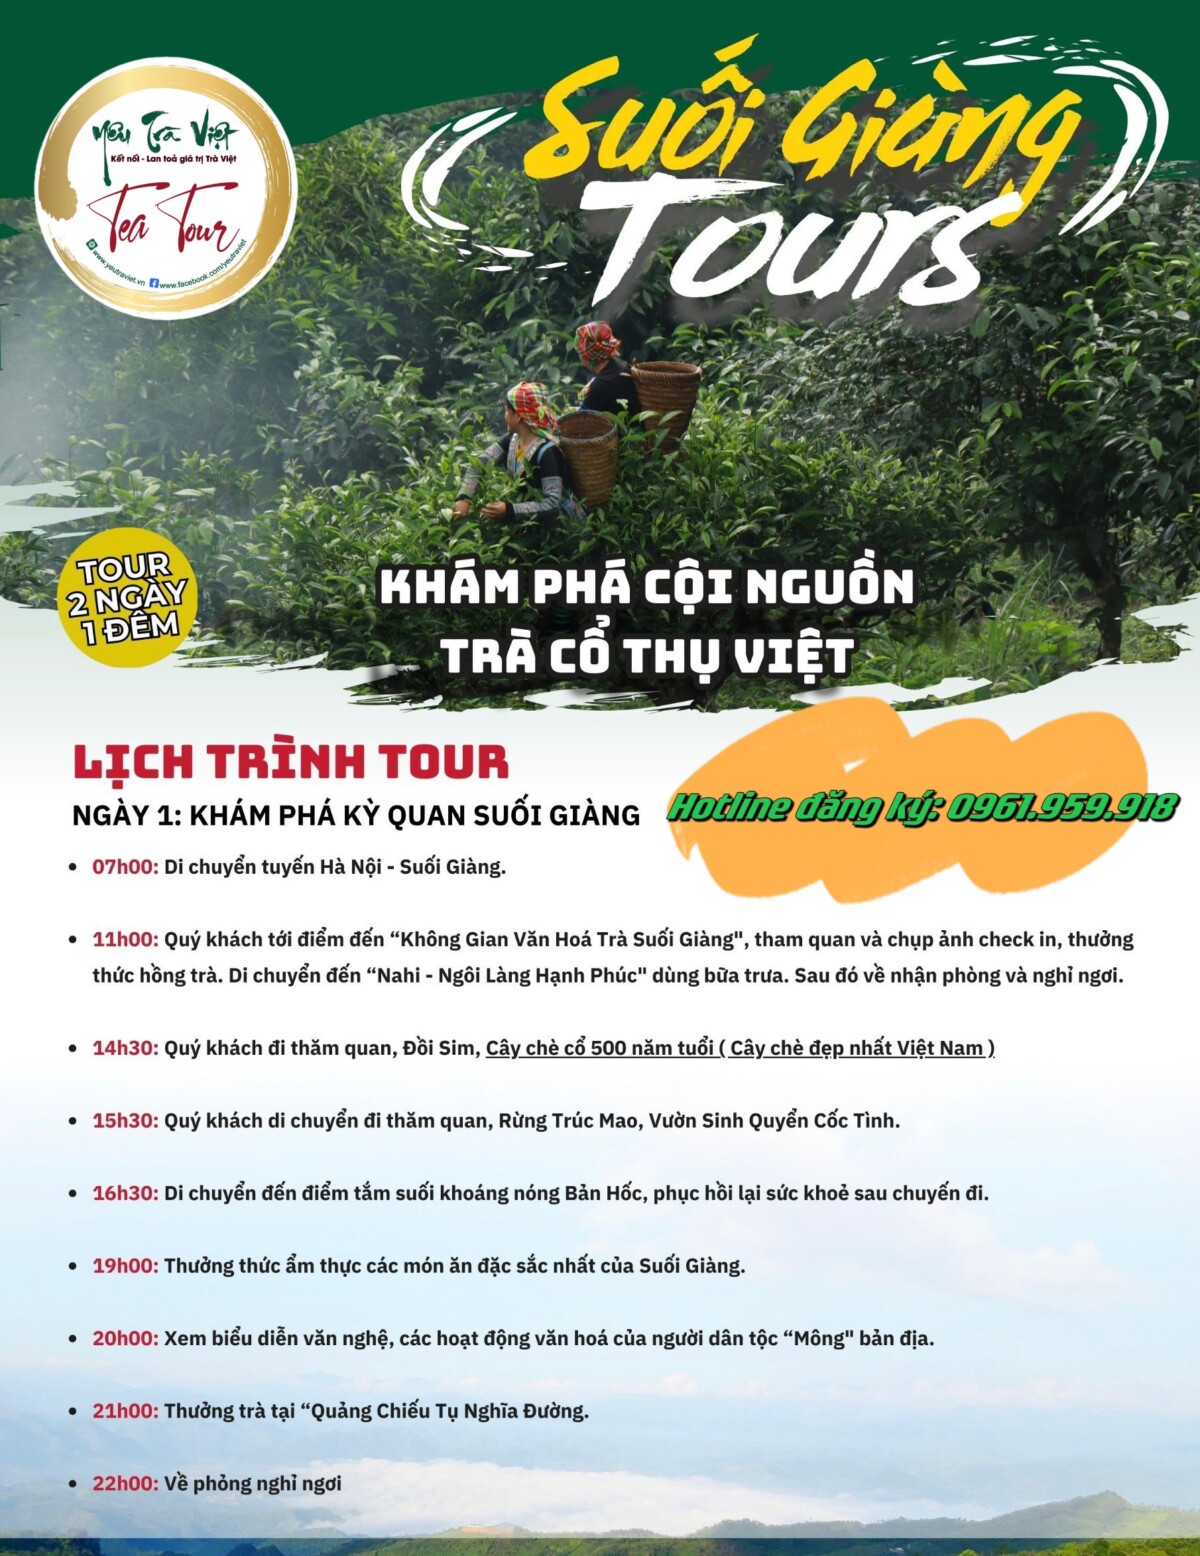 Tea Tour – Hành trình về với cây chè cổ thụ Suối Giàng, Yên Bái